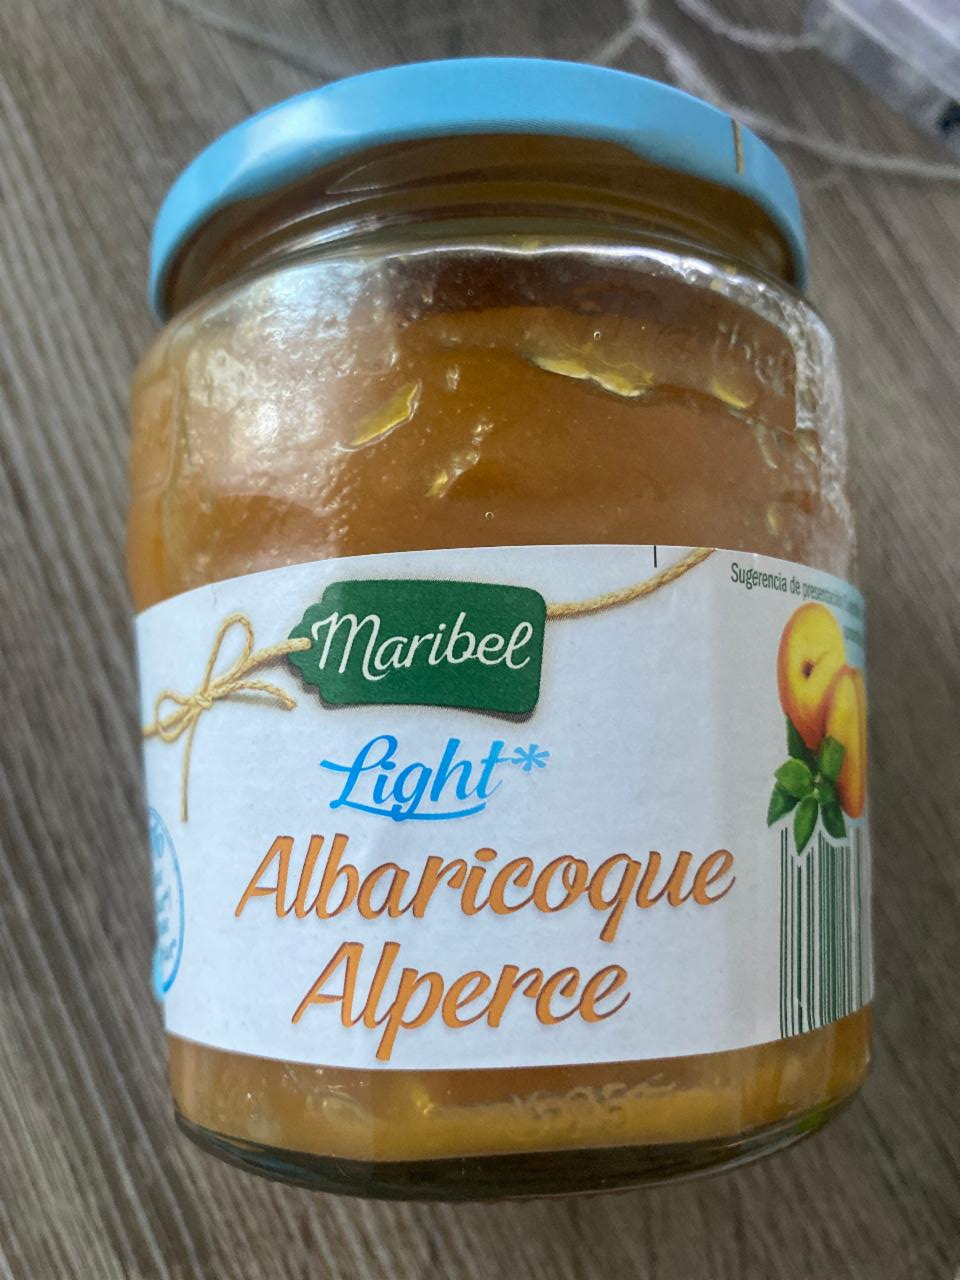 Фото - Варенье абрикосовое Albaricoque Alperce